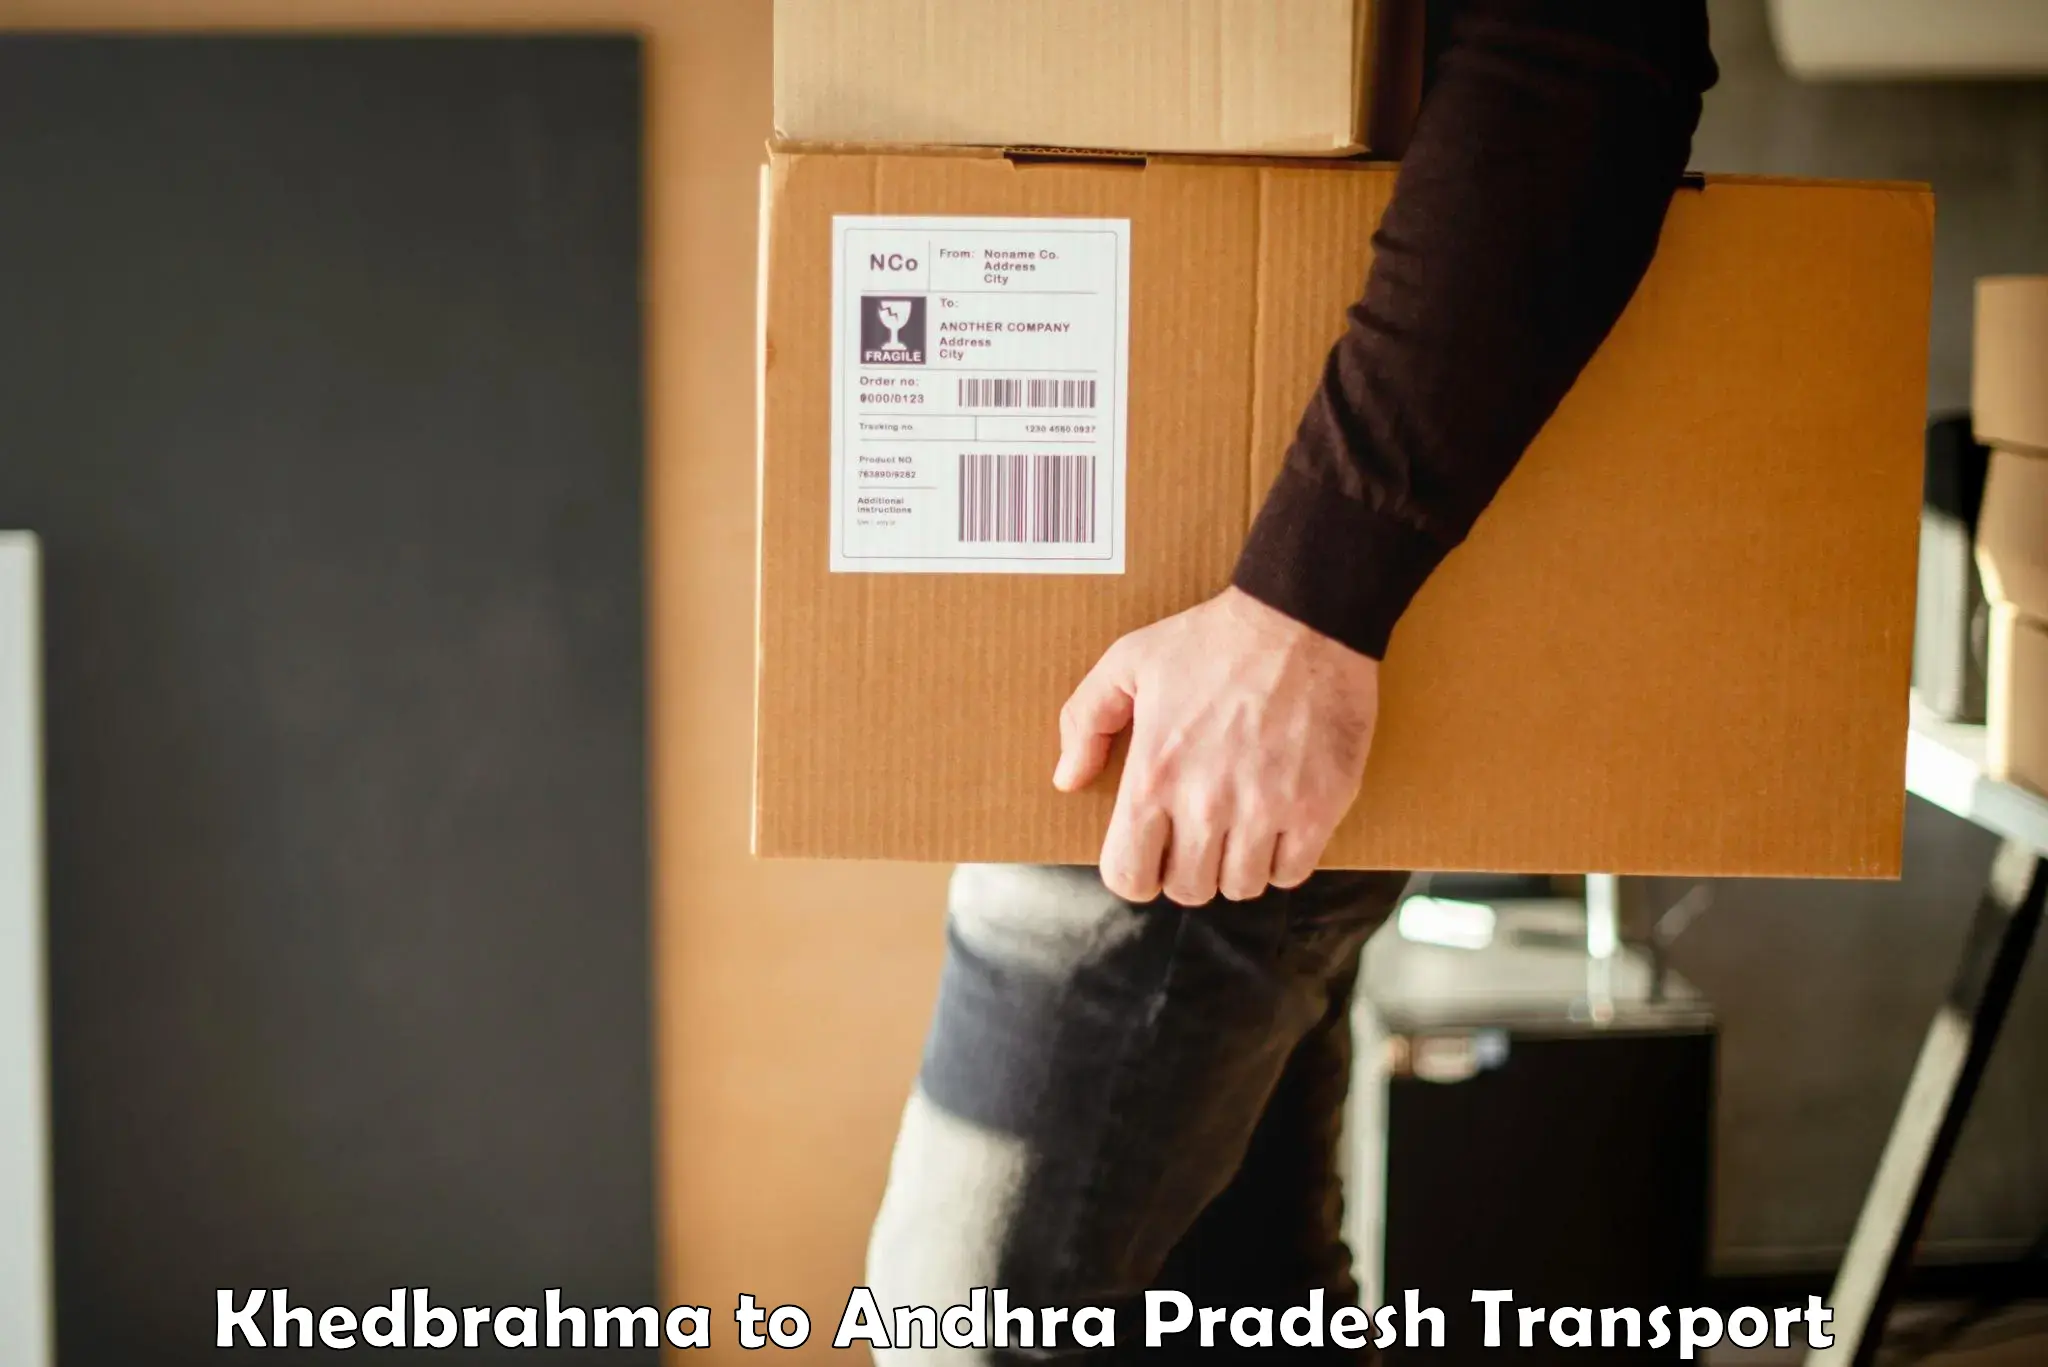 Truck transport companies in India Khedbrahma to Tadikonda